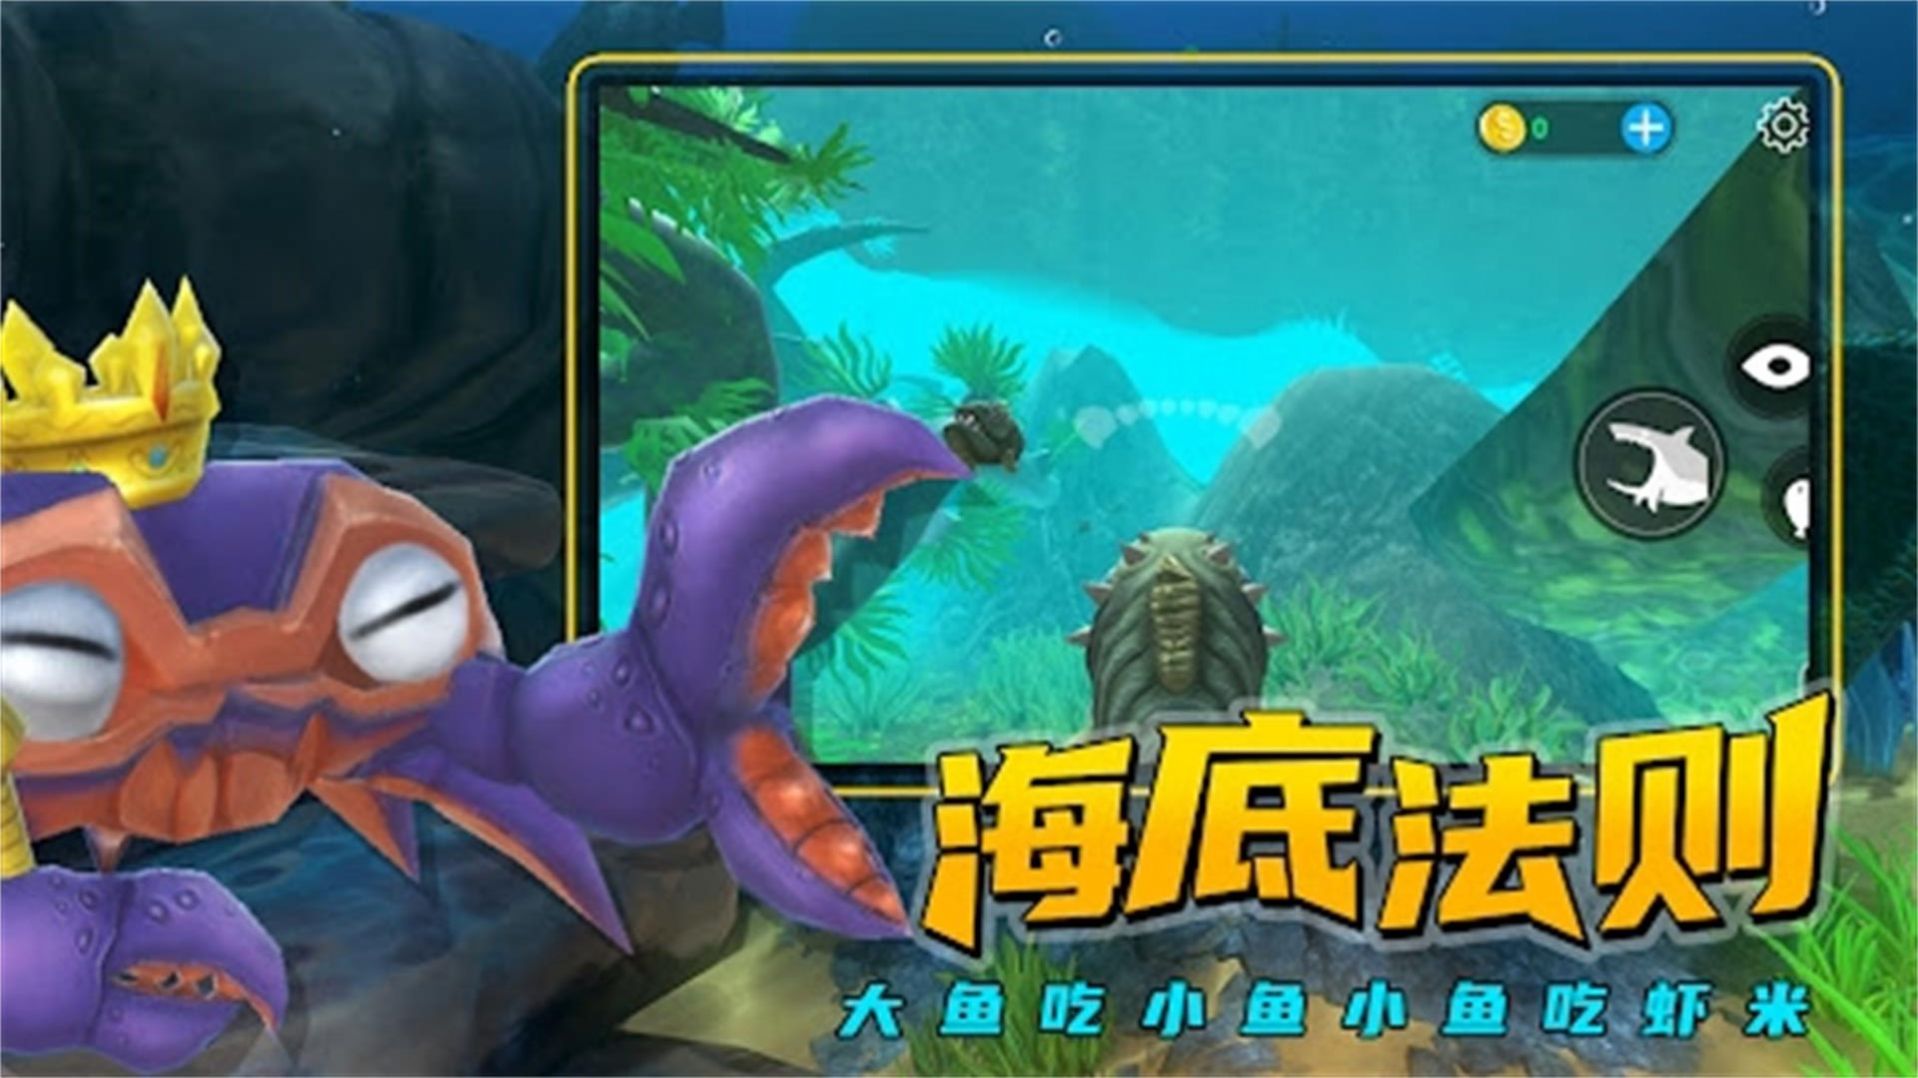 海洋猎杀族游戏下载,海洋猎杀族游戏安卓版 v1.0.5